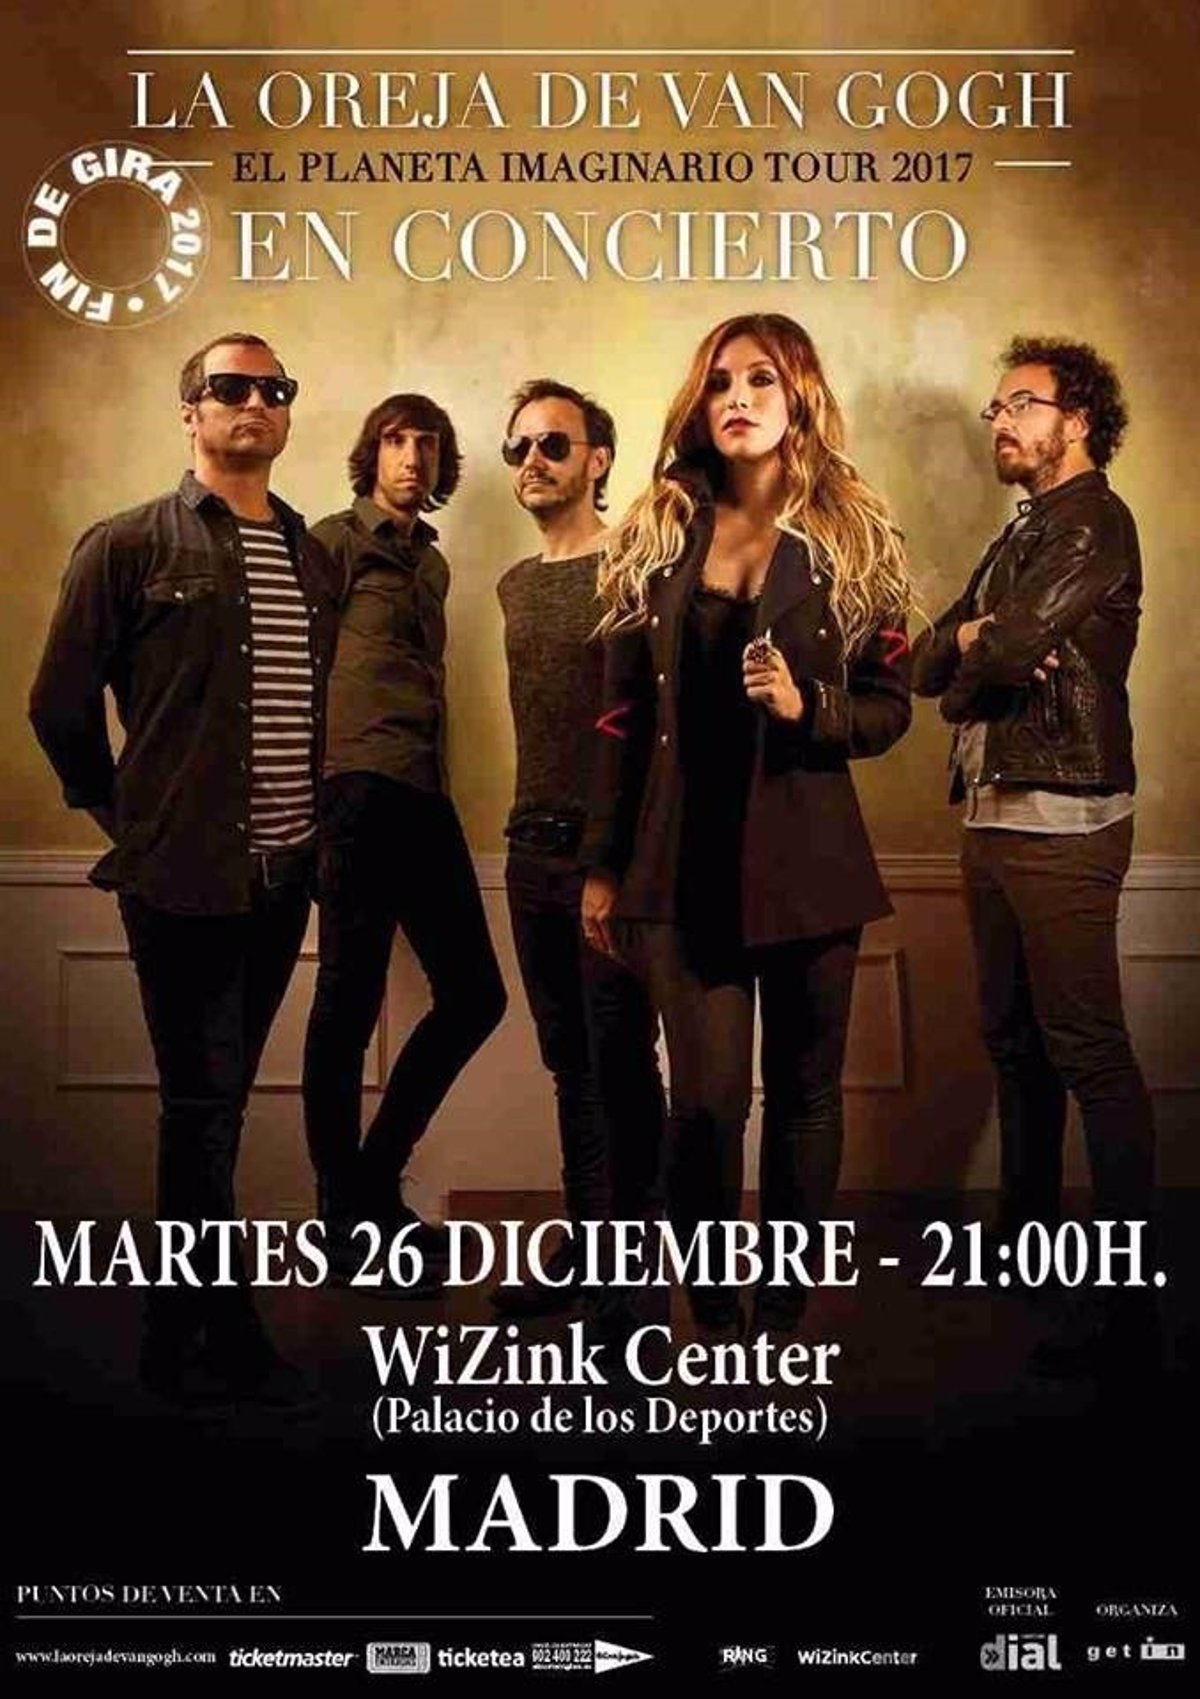 La Oreja de Van Gogh cerrará gira en diciembre en el WiZink Center de Madrid